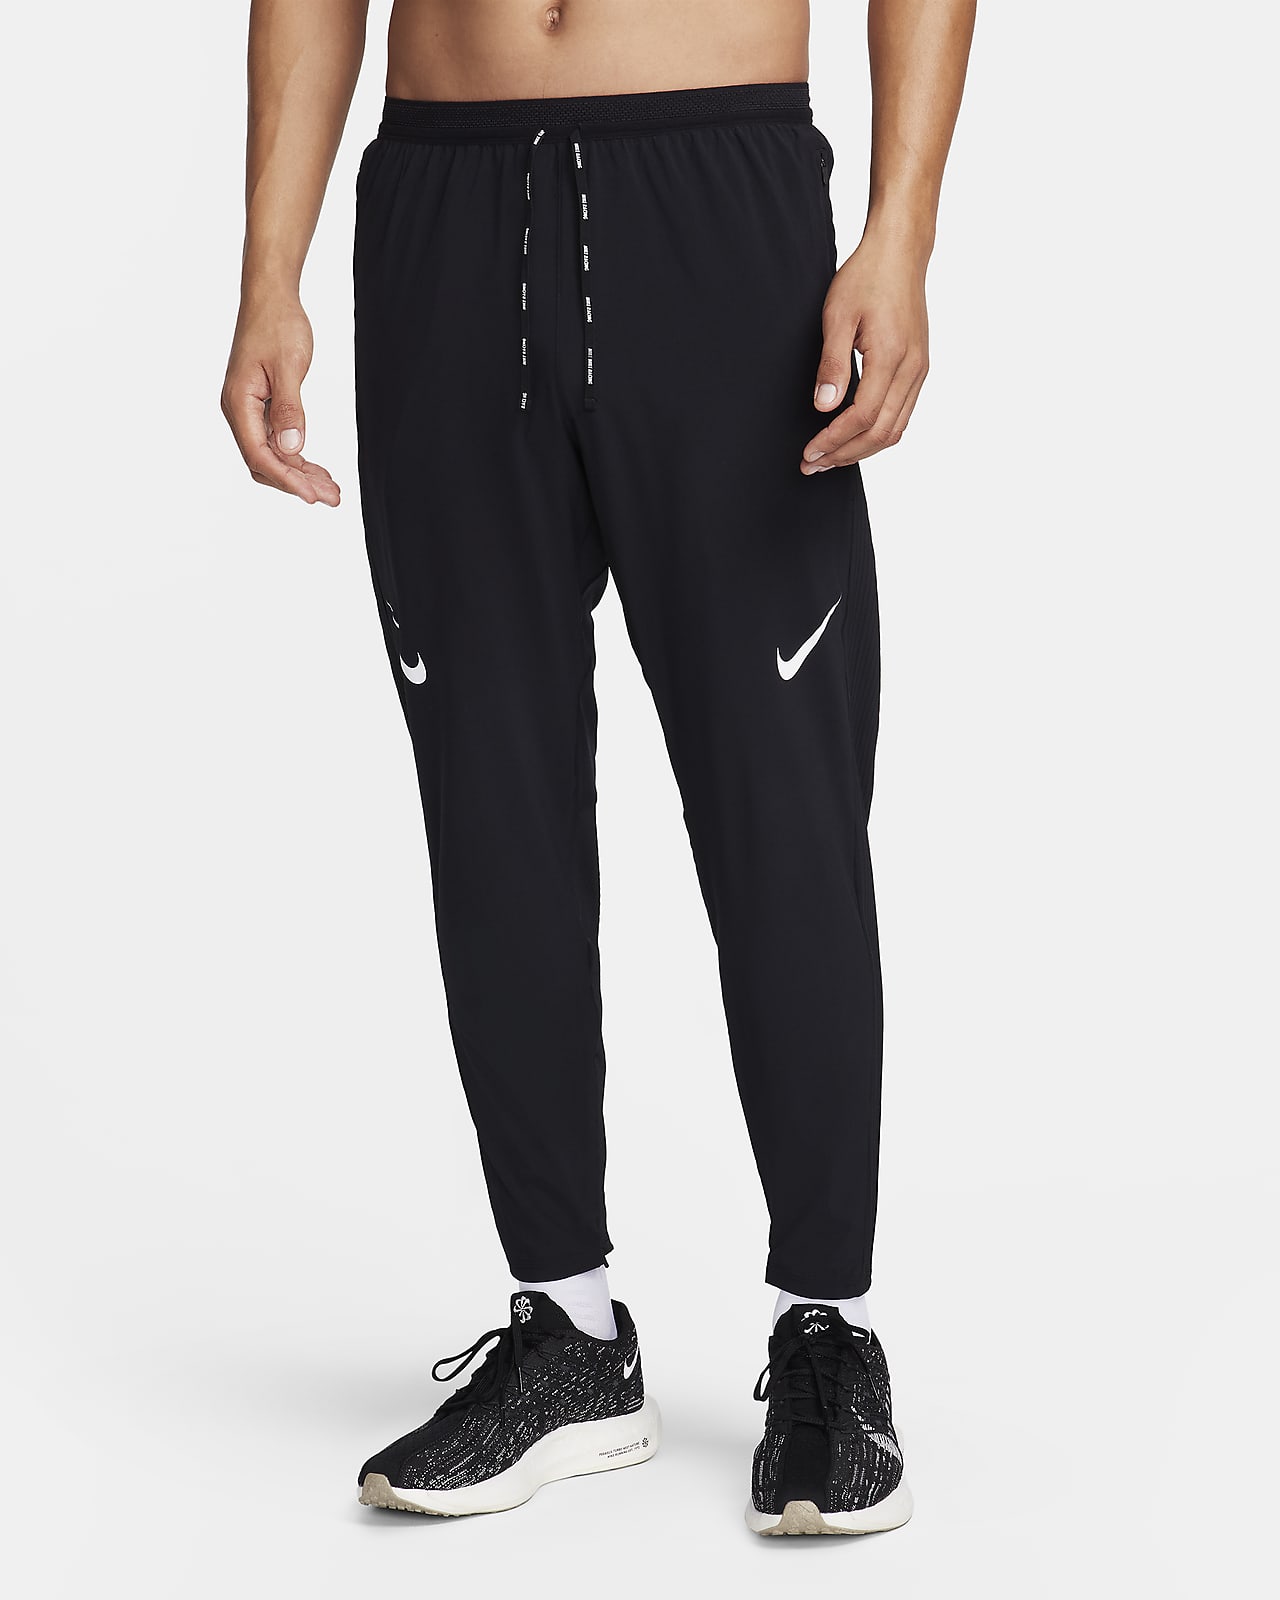 Nike Men's Dri-FIT Racing Pants